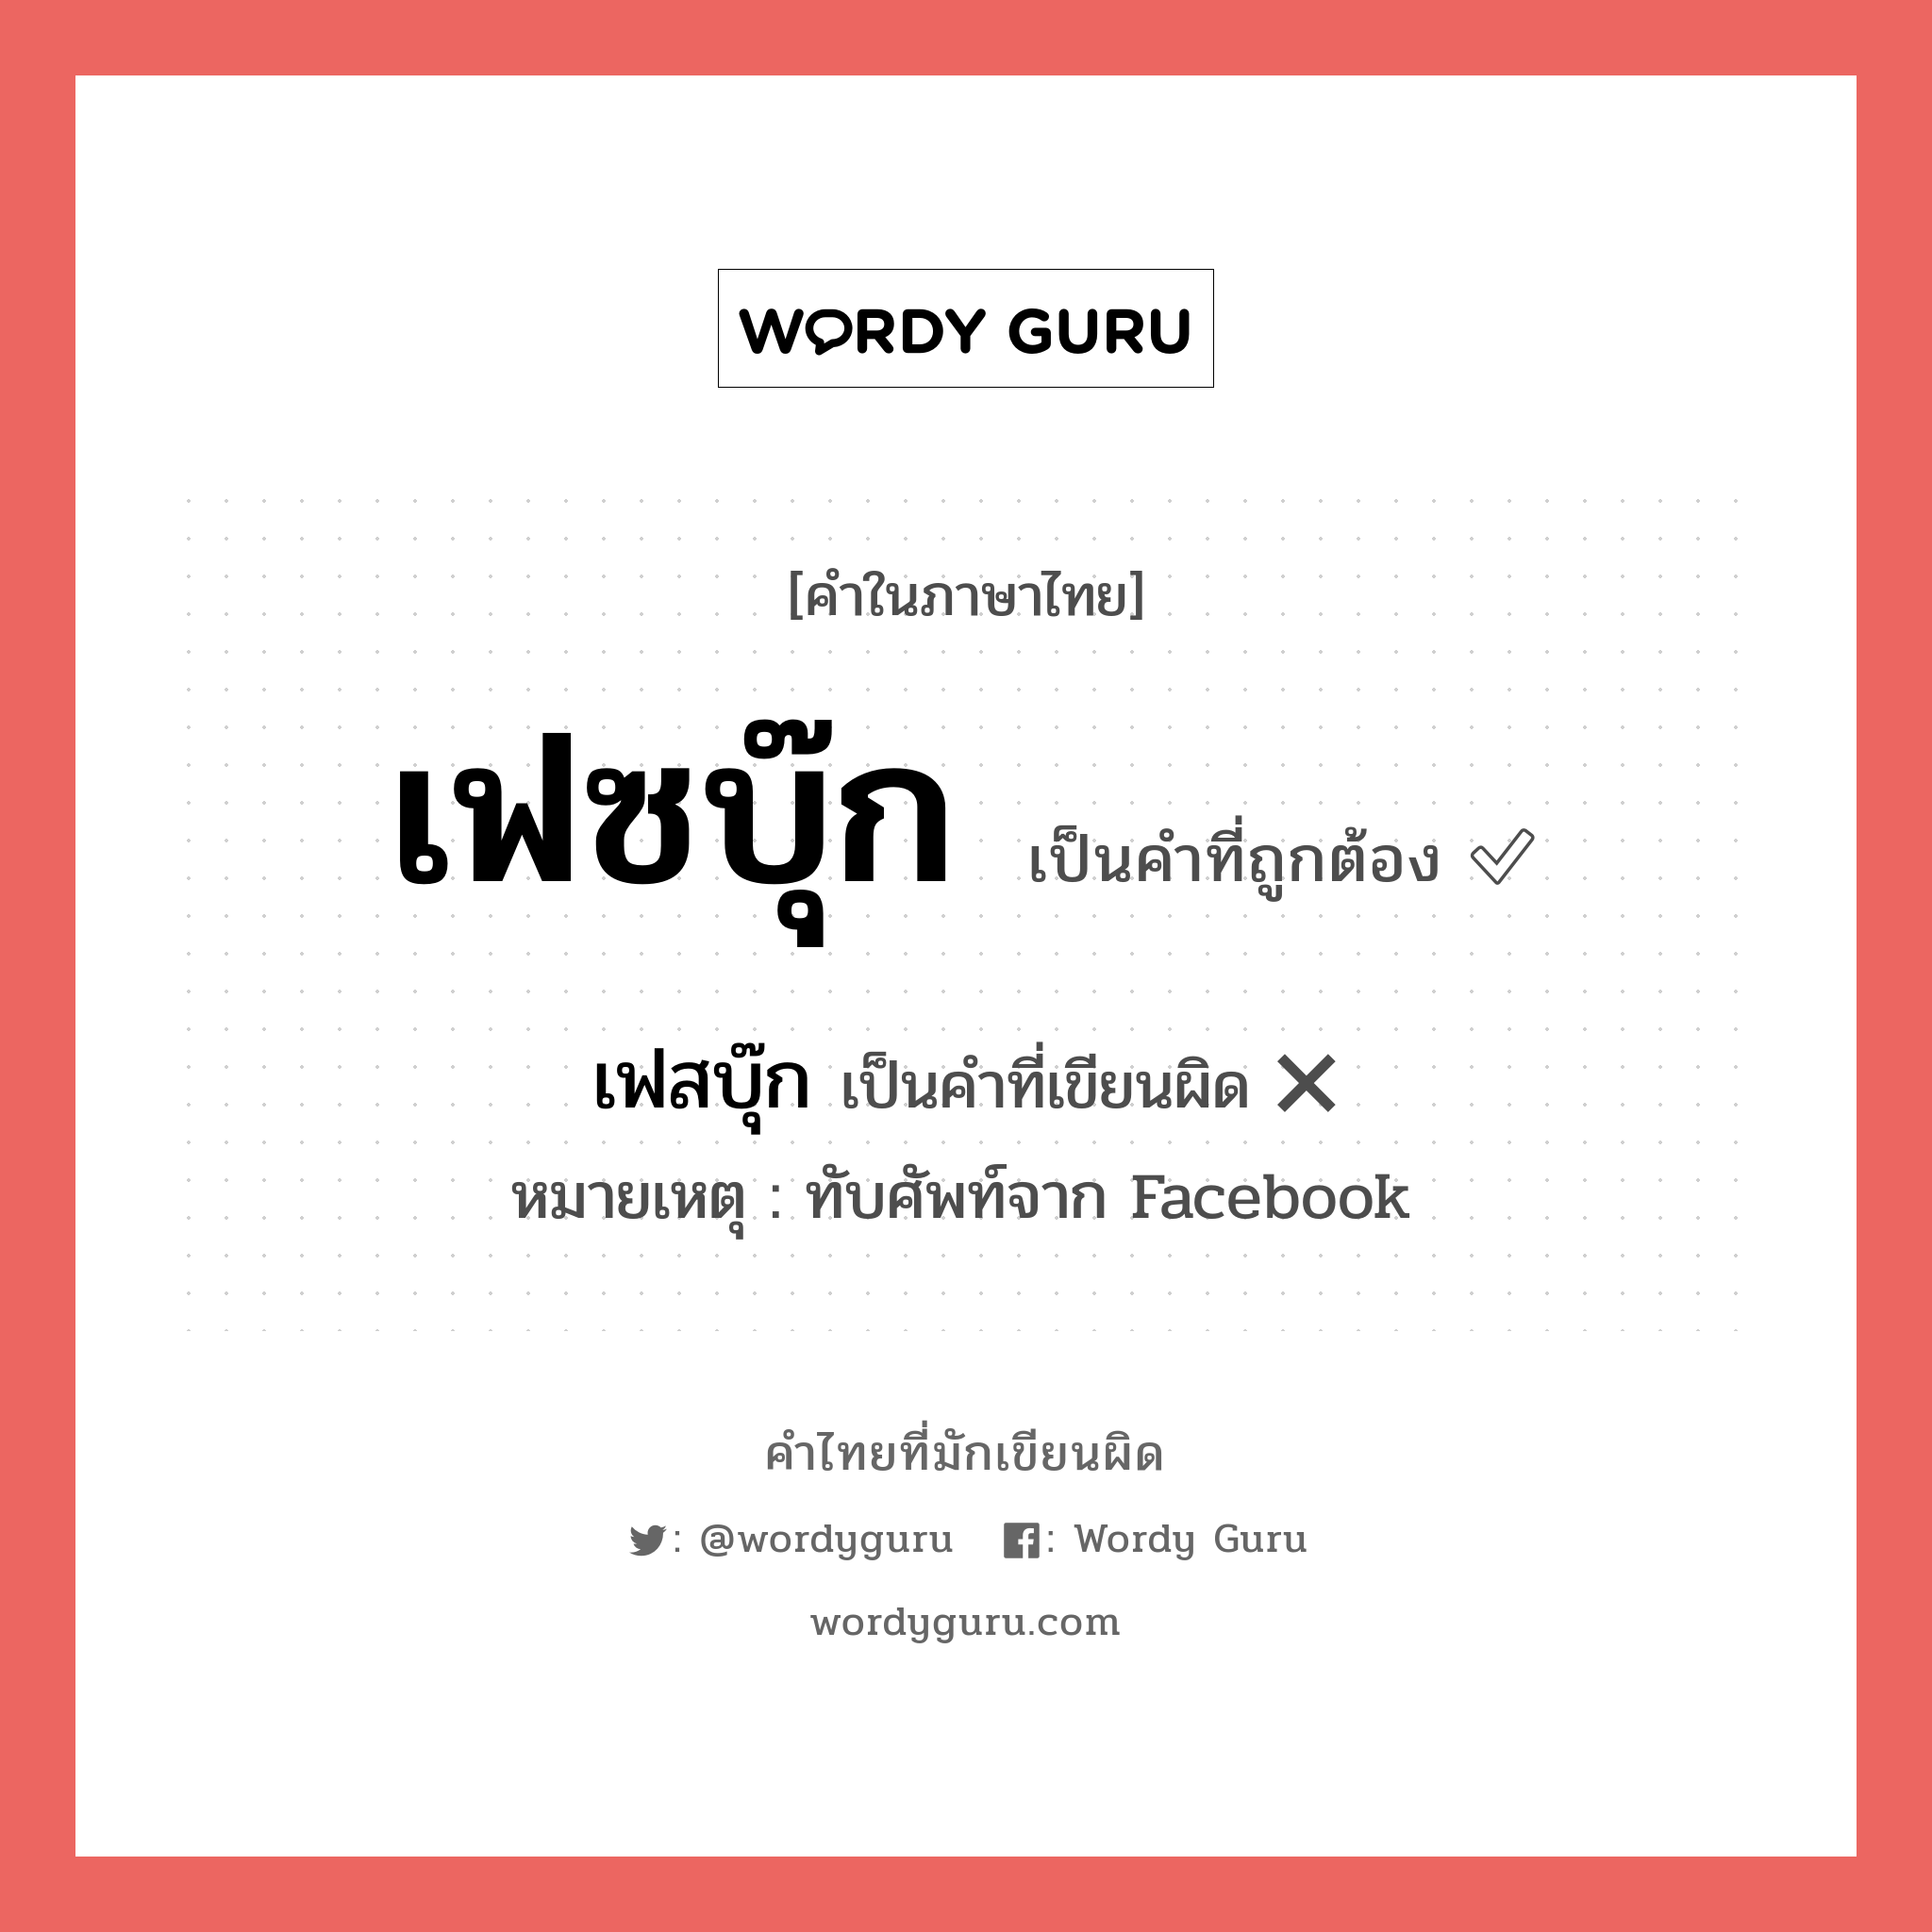 เฟสบุ๊ก หรือ เฟซบุ๊ก คำไหนเขียนถูก?, คำในภาษาไทยที่มักเขียนผิด เฟสบุ๊ก คำที่ผิด ❌ เฟซบุ๊ก หมายเหตุ ทับศัพท์จาก Facebook